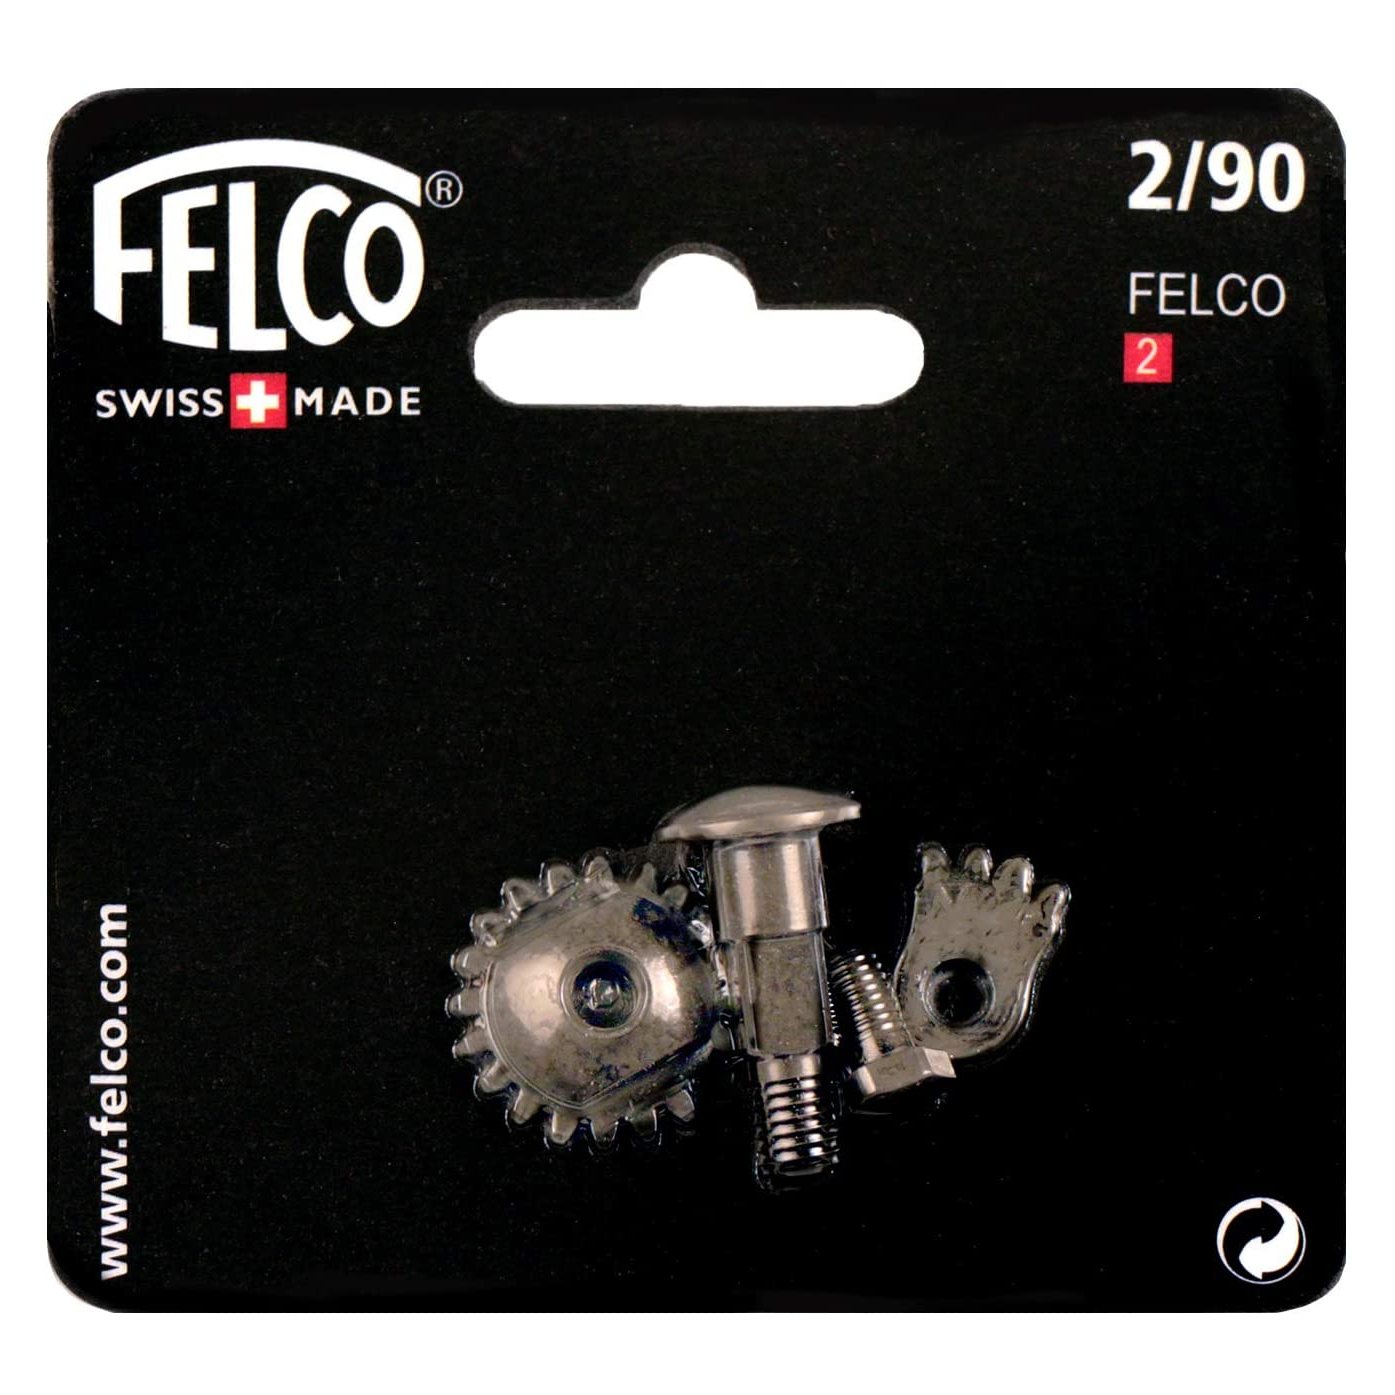 Felco secateurs 2/90 Nut + Bolt set for Model 2 - Genuine Felco pack - official Felco stockist